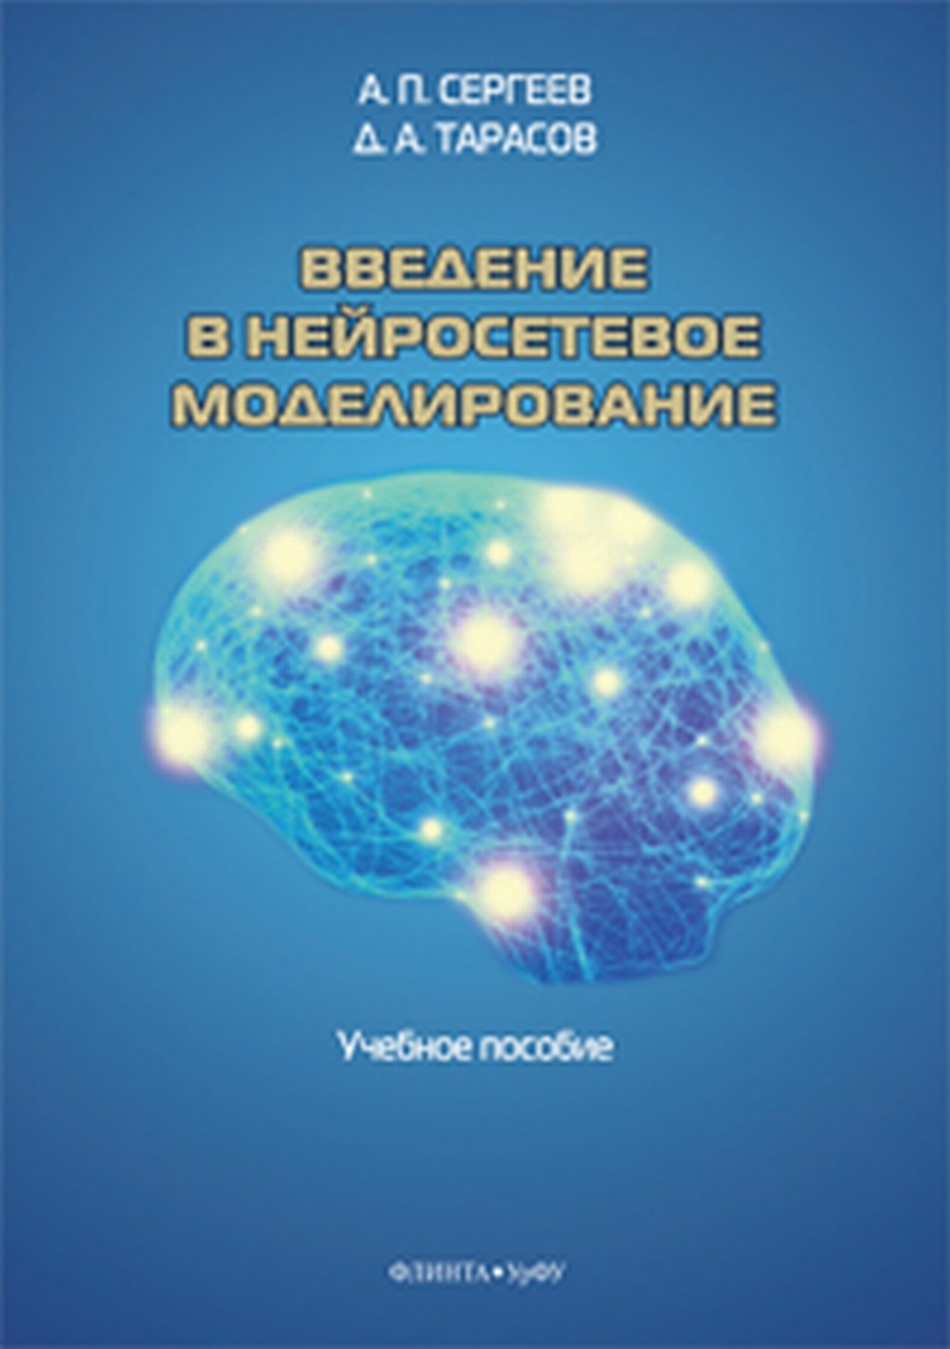 Сергеев А., Тарасов Д. Введение в нейросетевое моделирование. Учебное пособие 